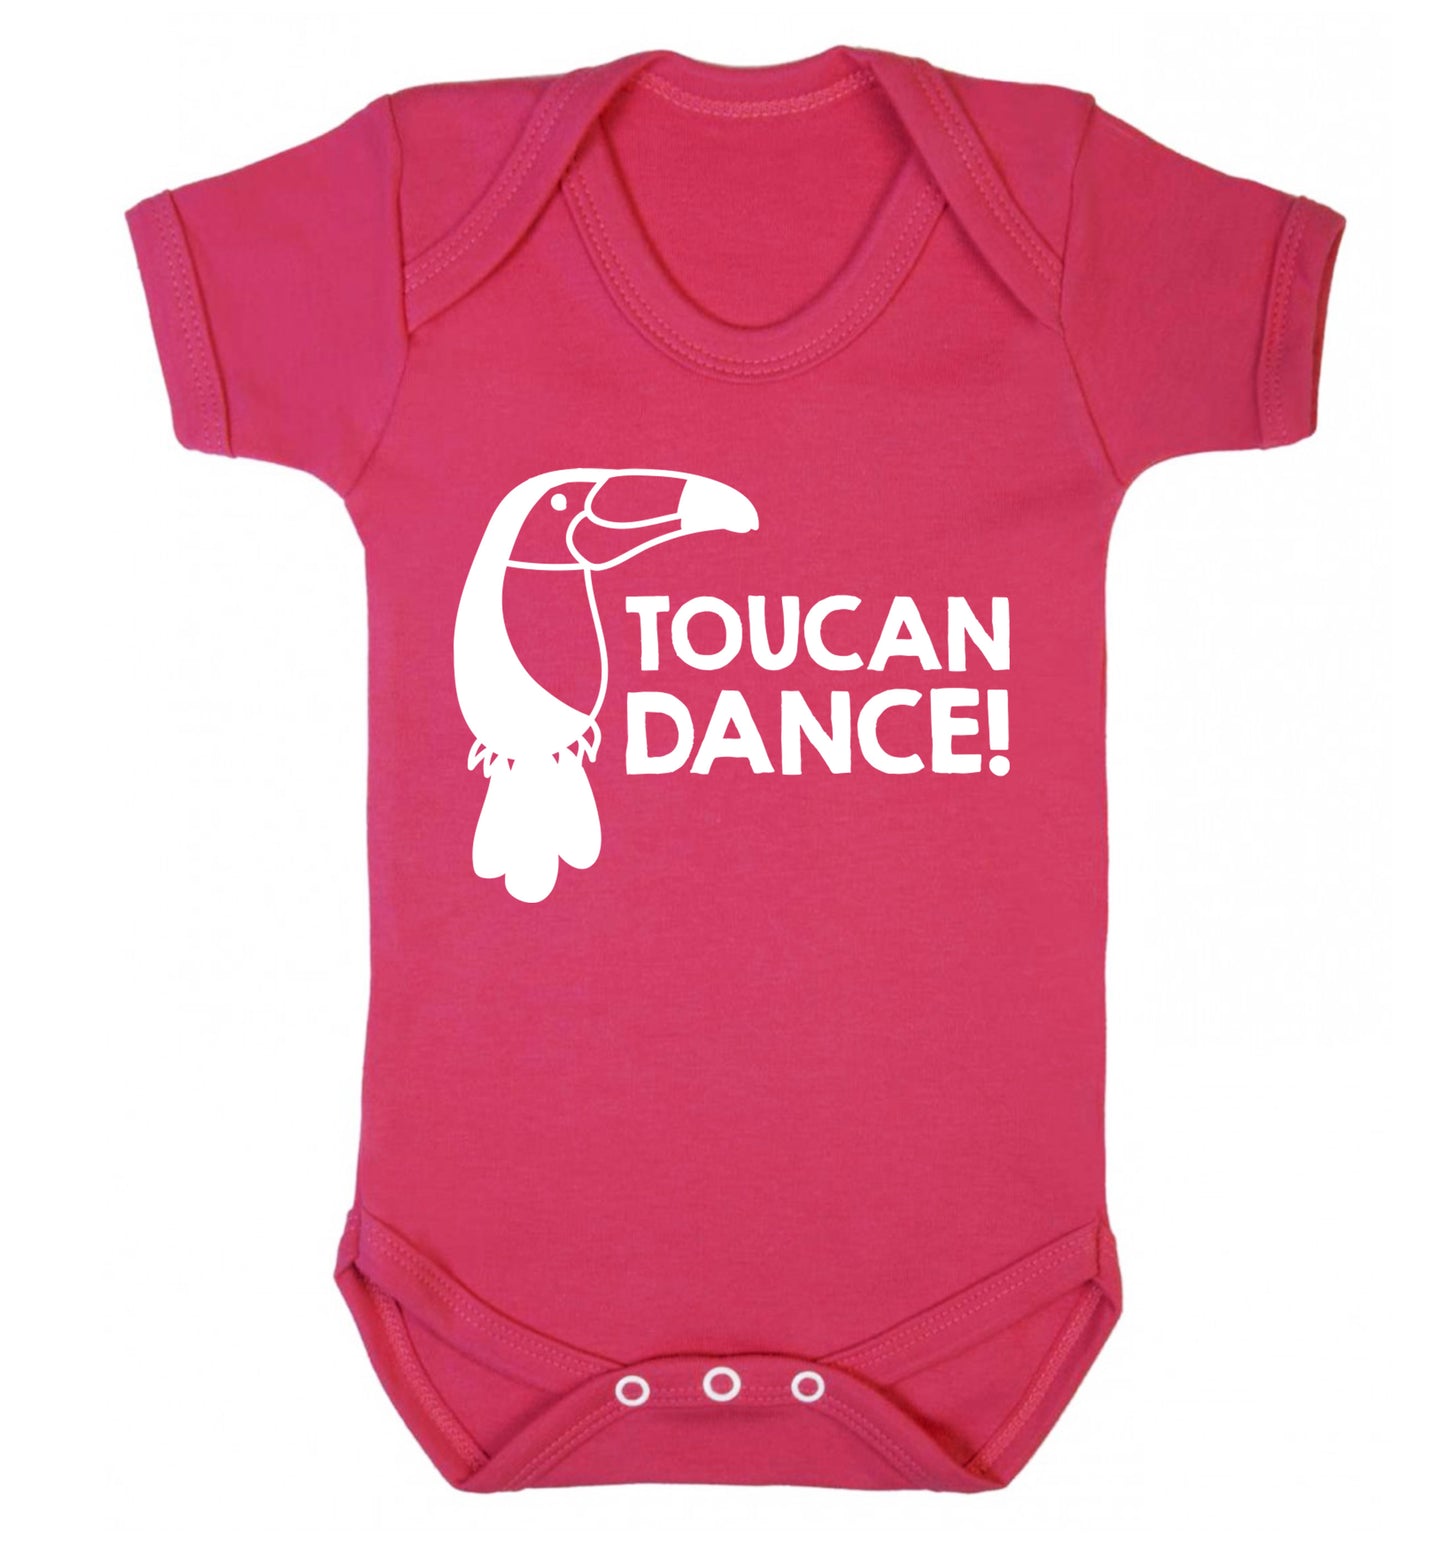 Toucan dance Baby Vest dark pink 18-24 months